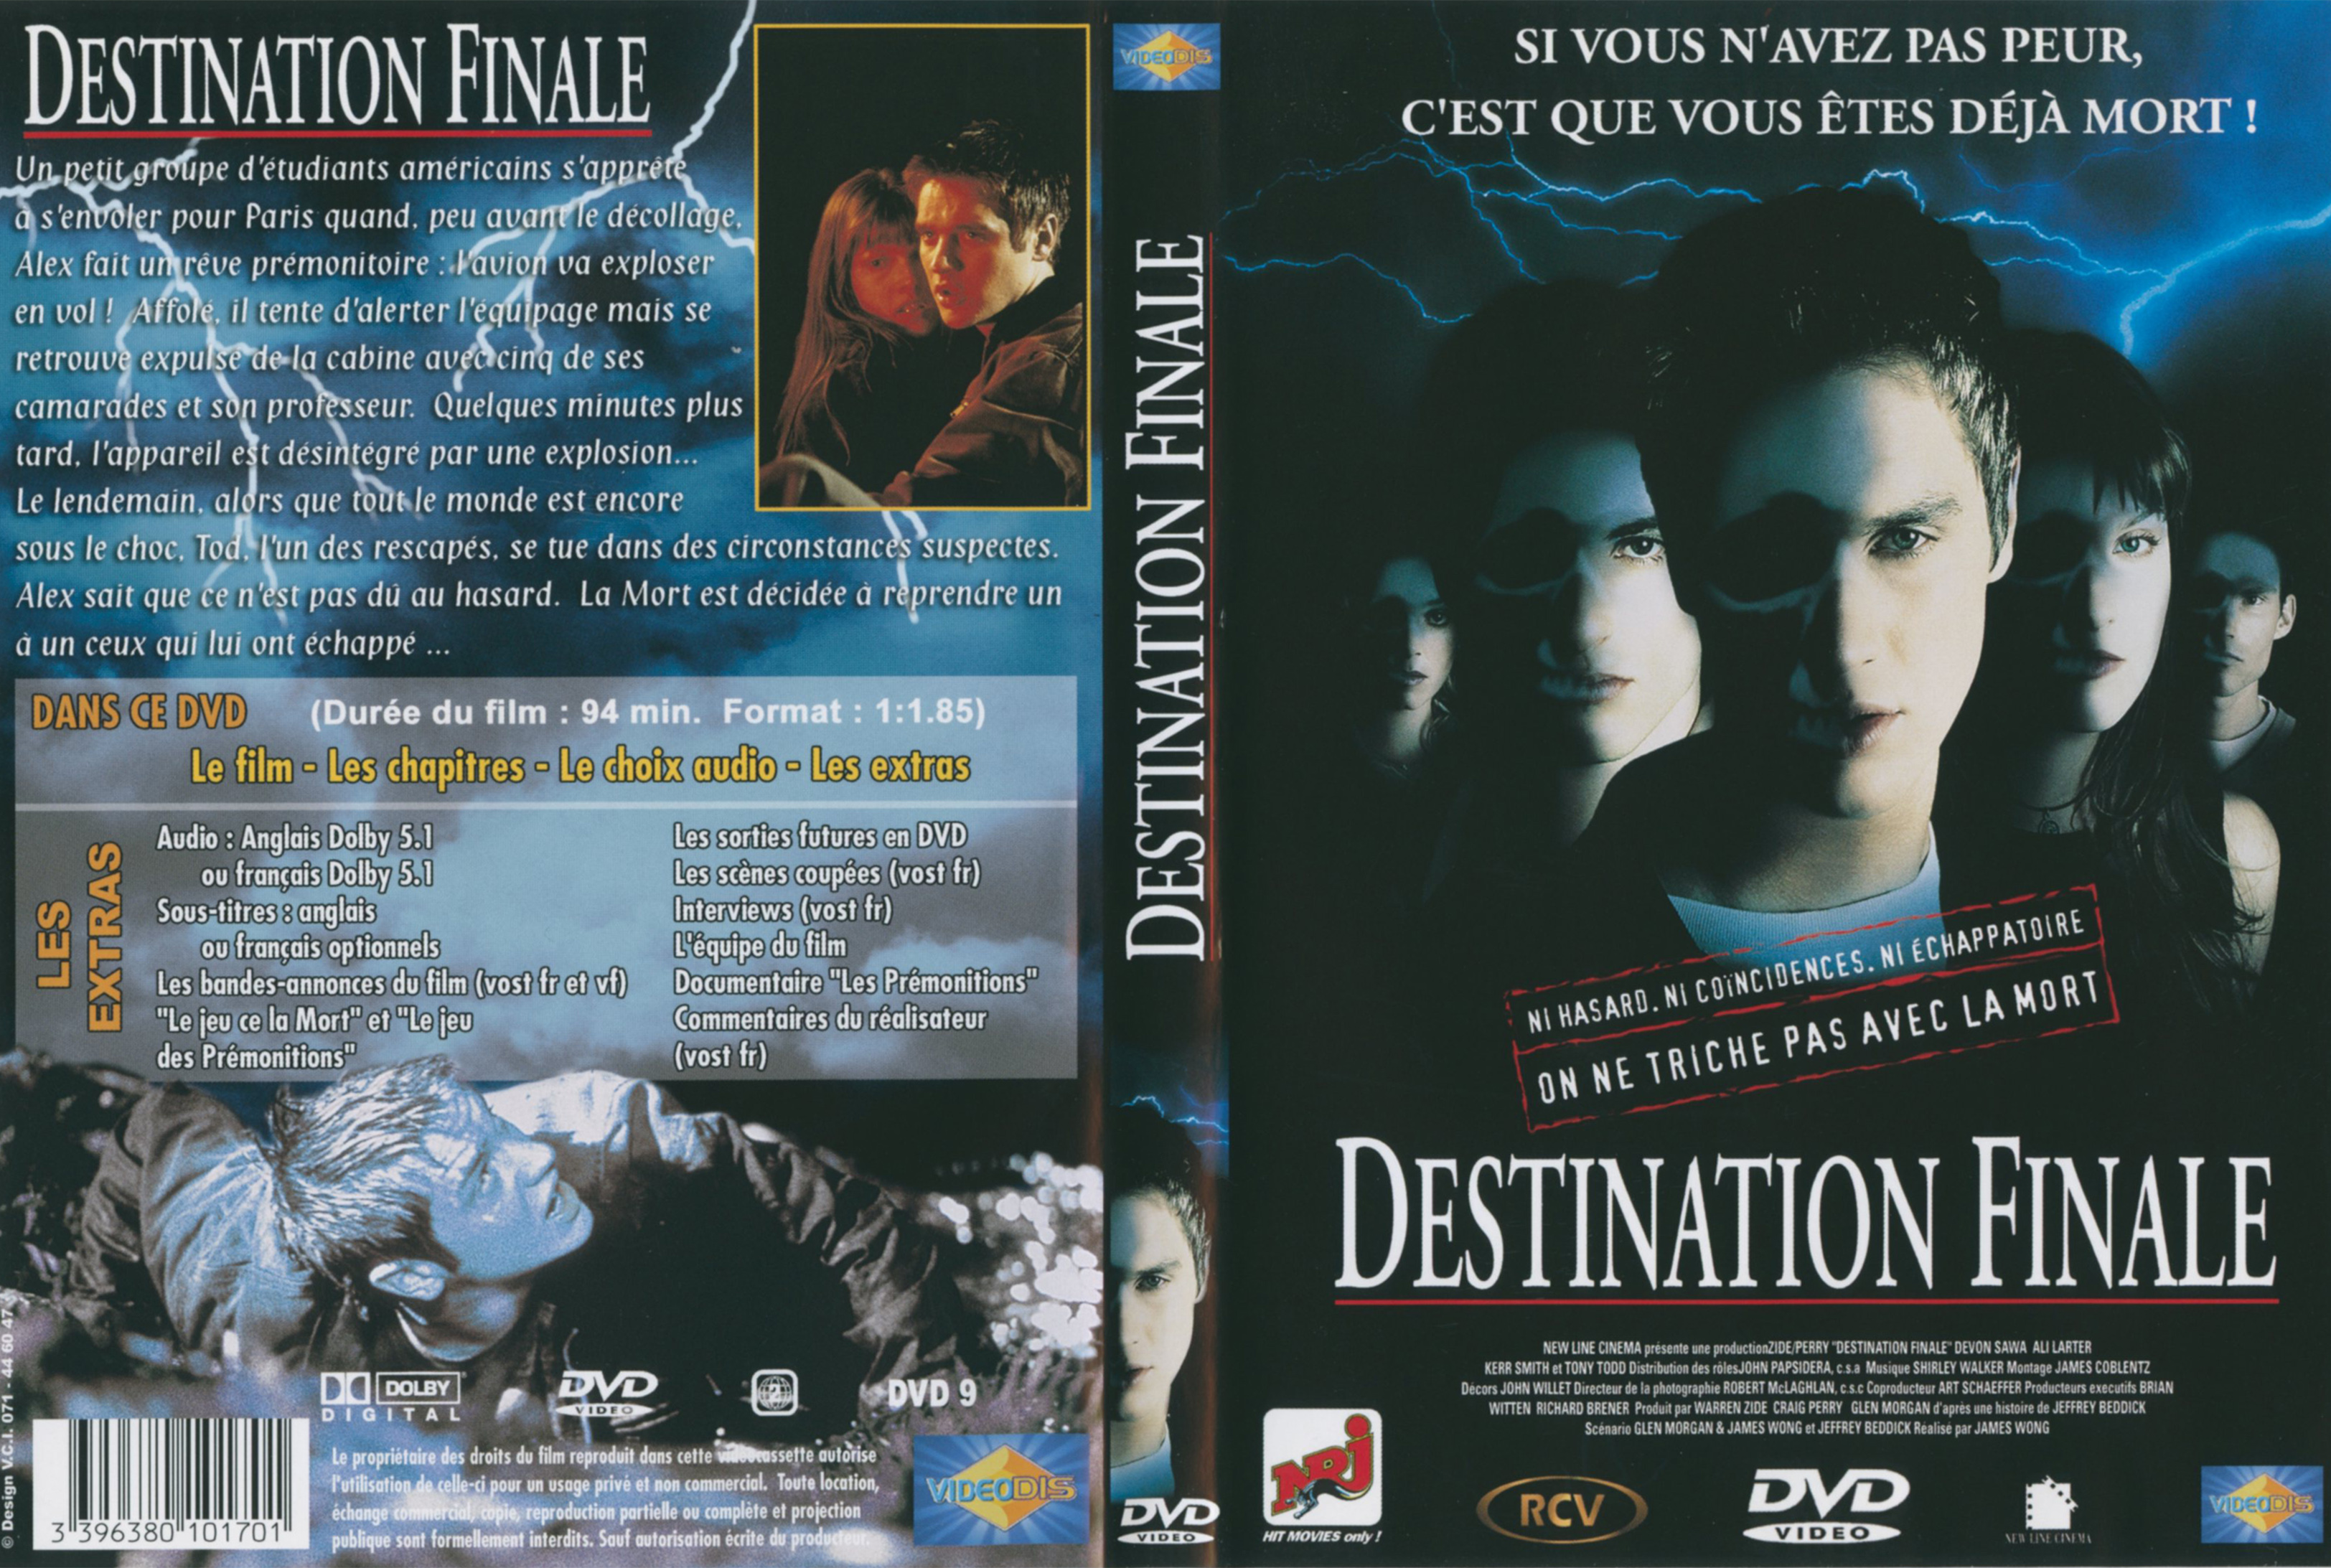 Jaquette DVD Destination finale v3